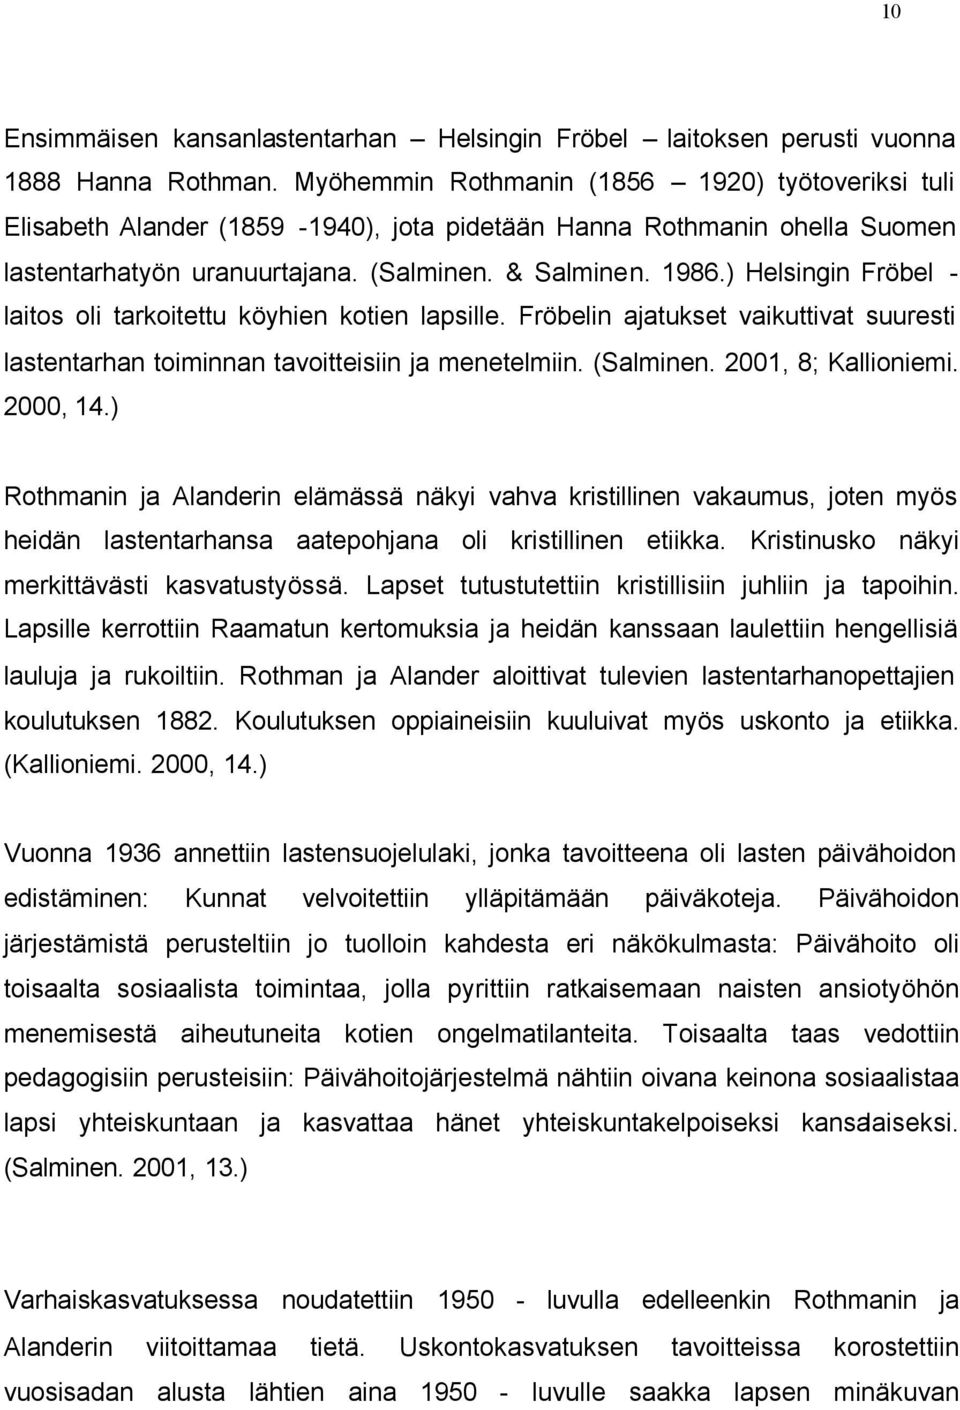 ) Helsingin Fröbel - laitos oli tarkoitettu köyhien kotien lapsille. Fröbelin ajatukset vaikuttivat suuresti lastentarhan toiminnan tavoitteisiin ja menetelmiin. (Salminen. 2001, 8; Kallioniemi.